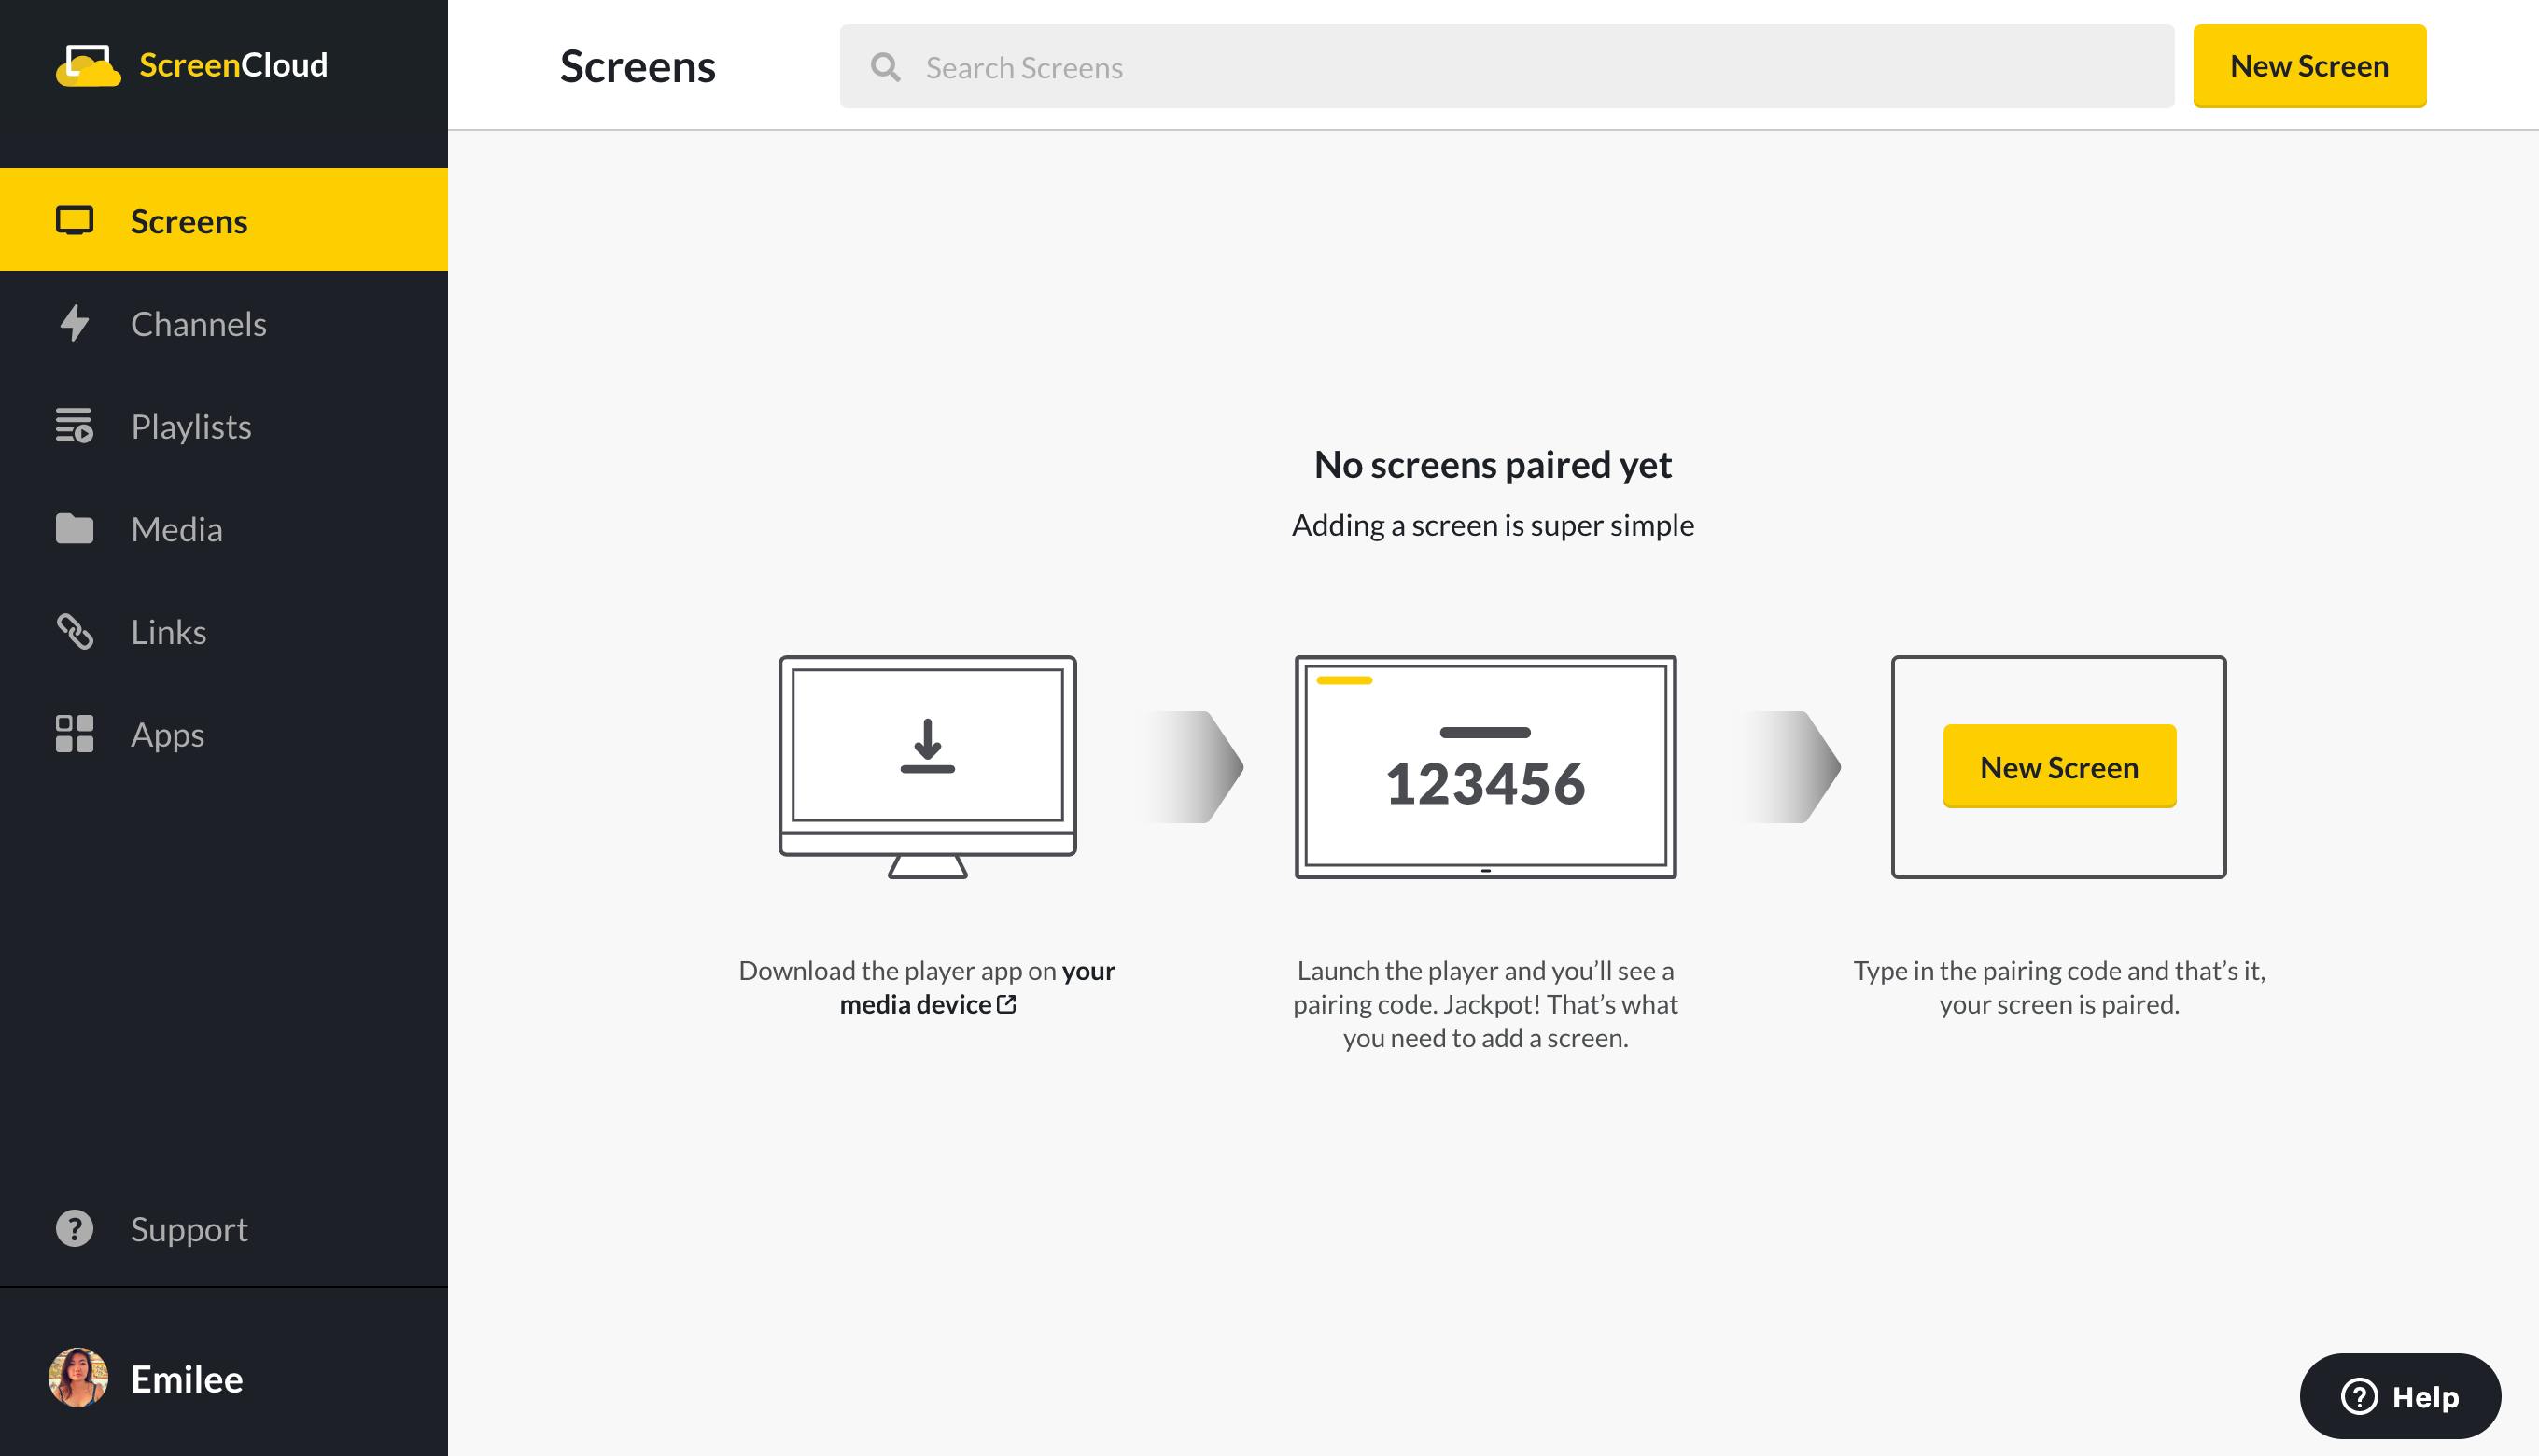 screencloud screens settings